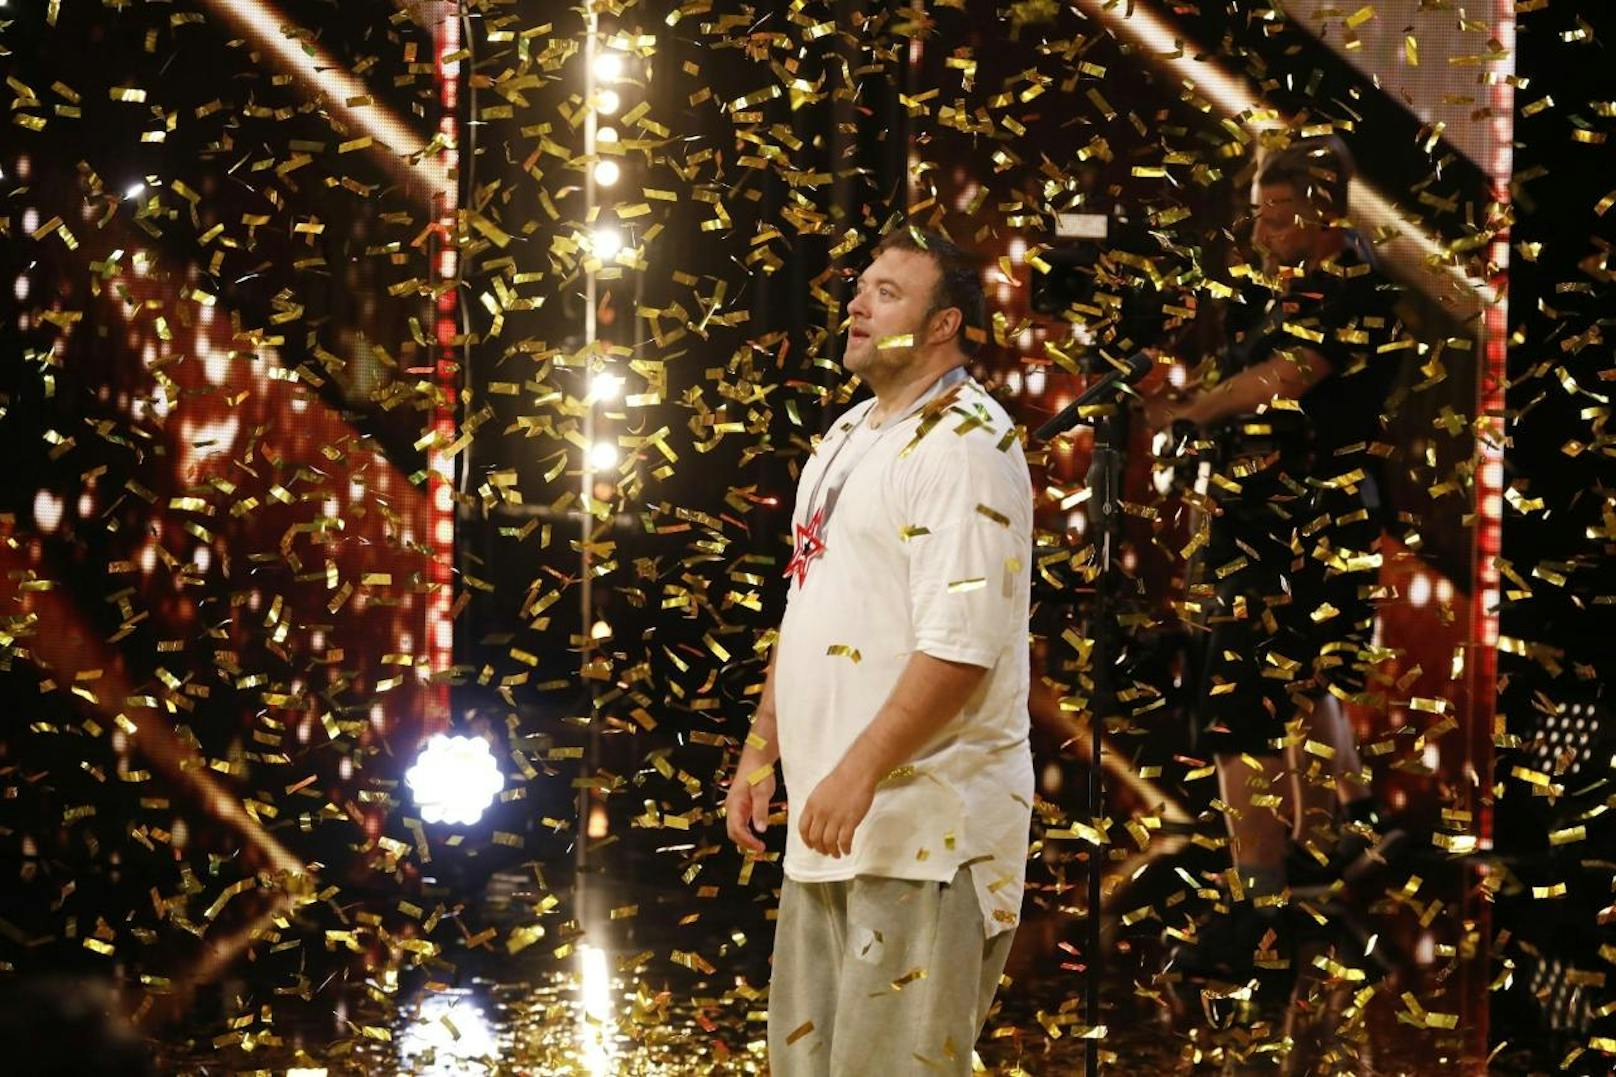 Hip-Hop-Tänzer Andreas Maintz aus Aachen begeisterte die Jury und die Zuschauer gleichermaßen und landete dank des "Goldenen Buzzers" direkt im Finale.